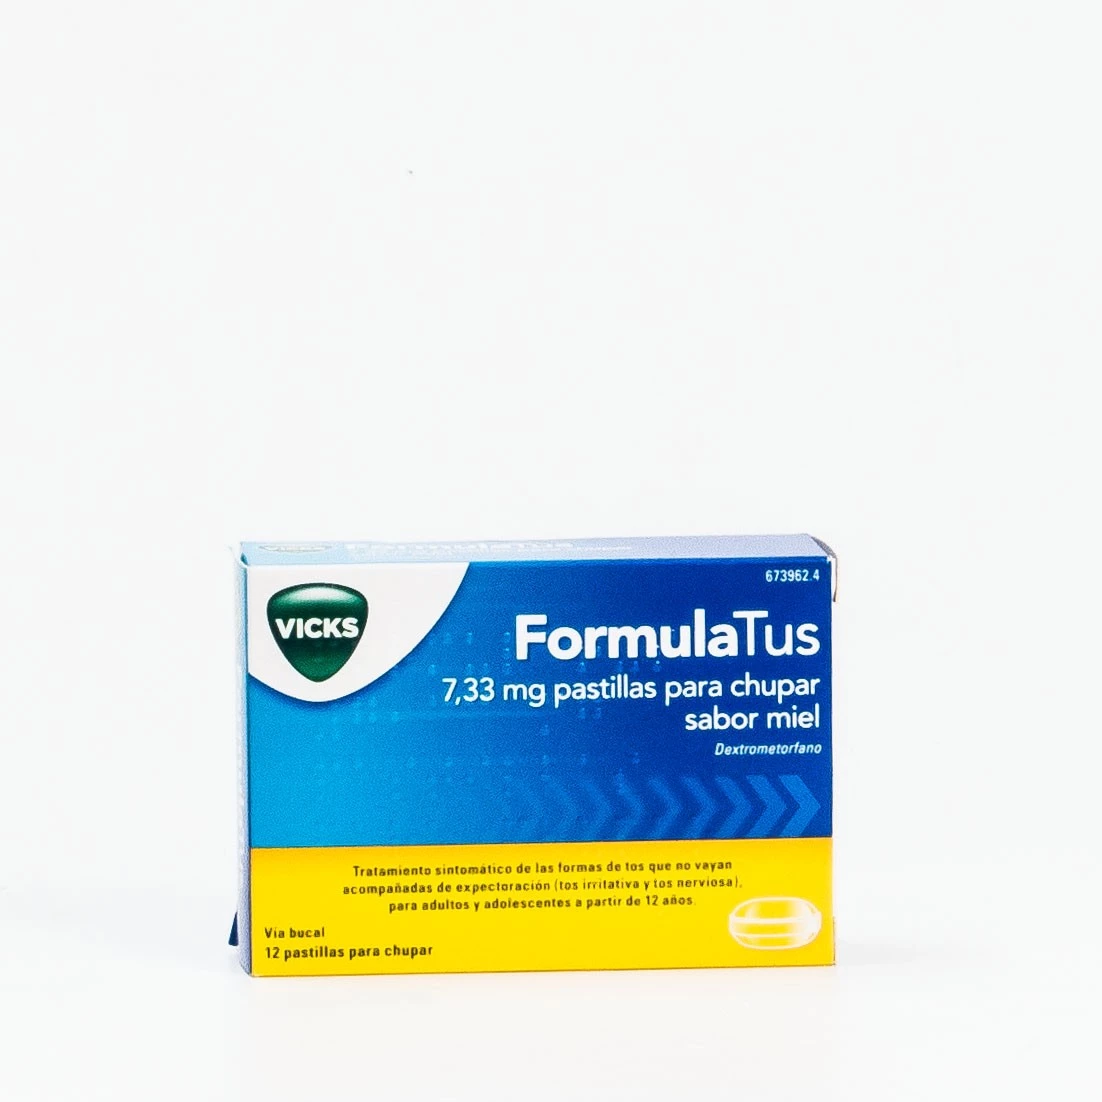 FormulaTus Vicks 7,33 mg pastillas para chupar